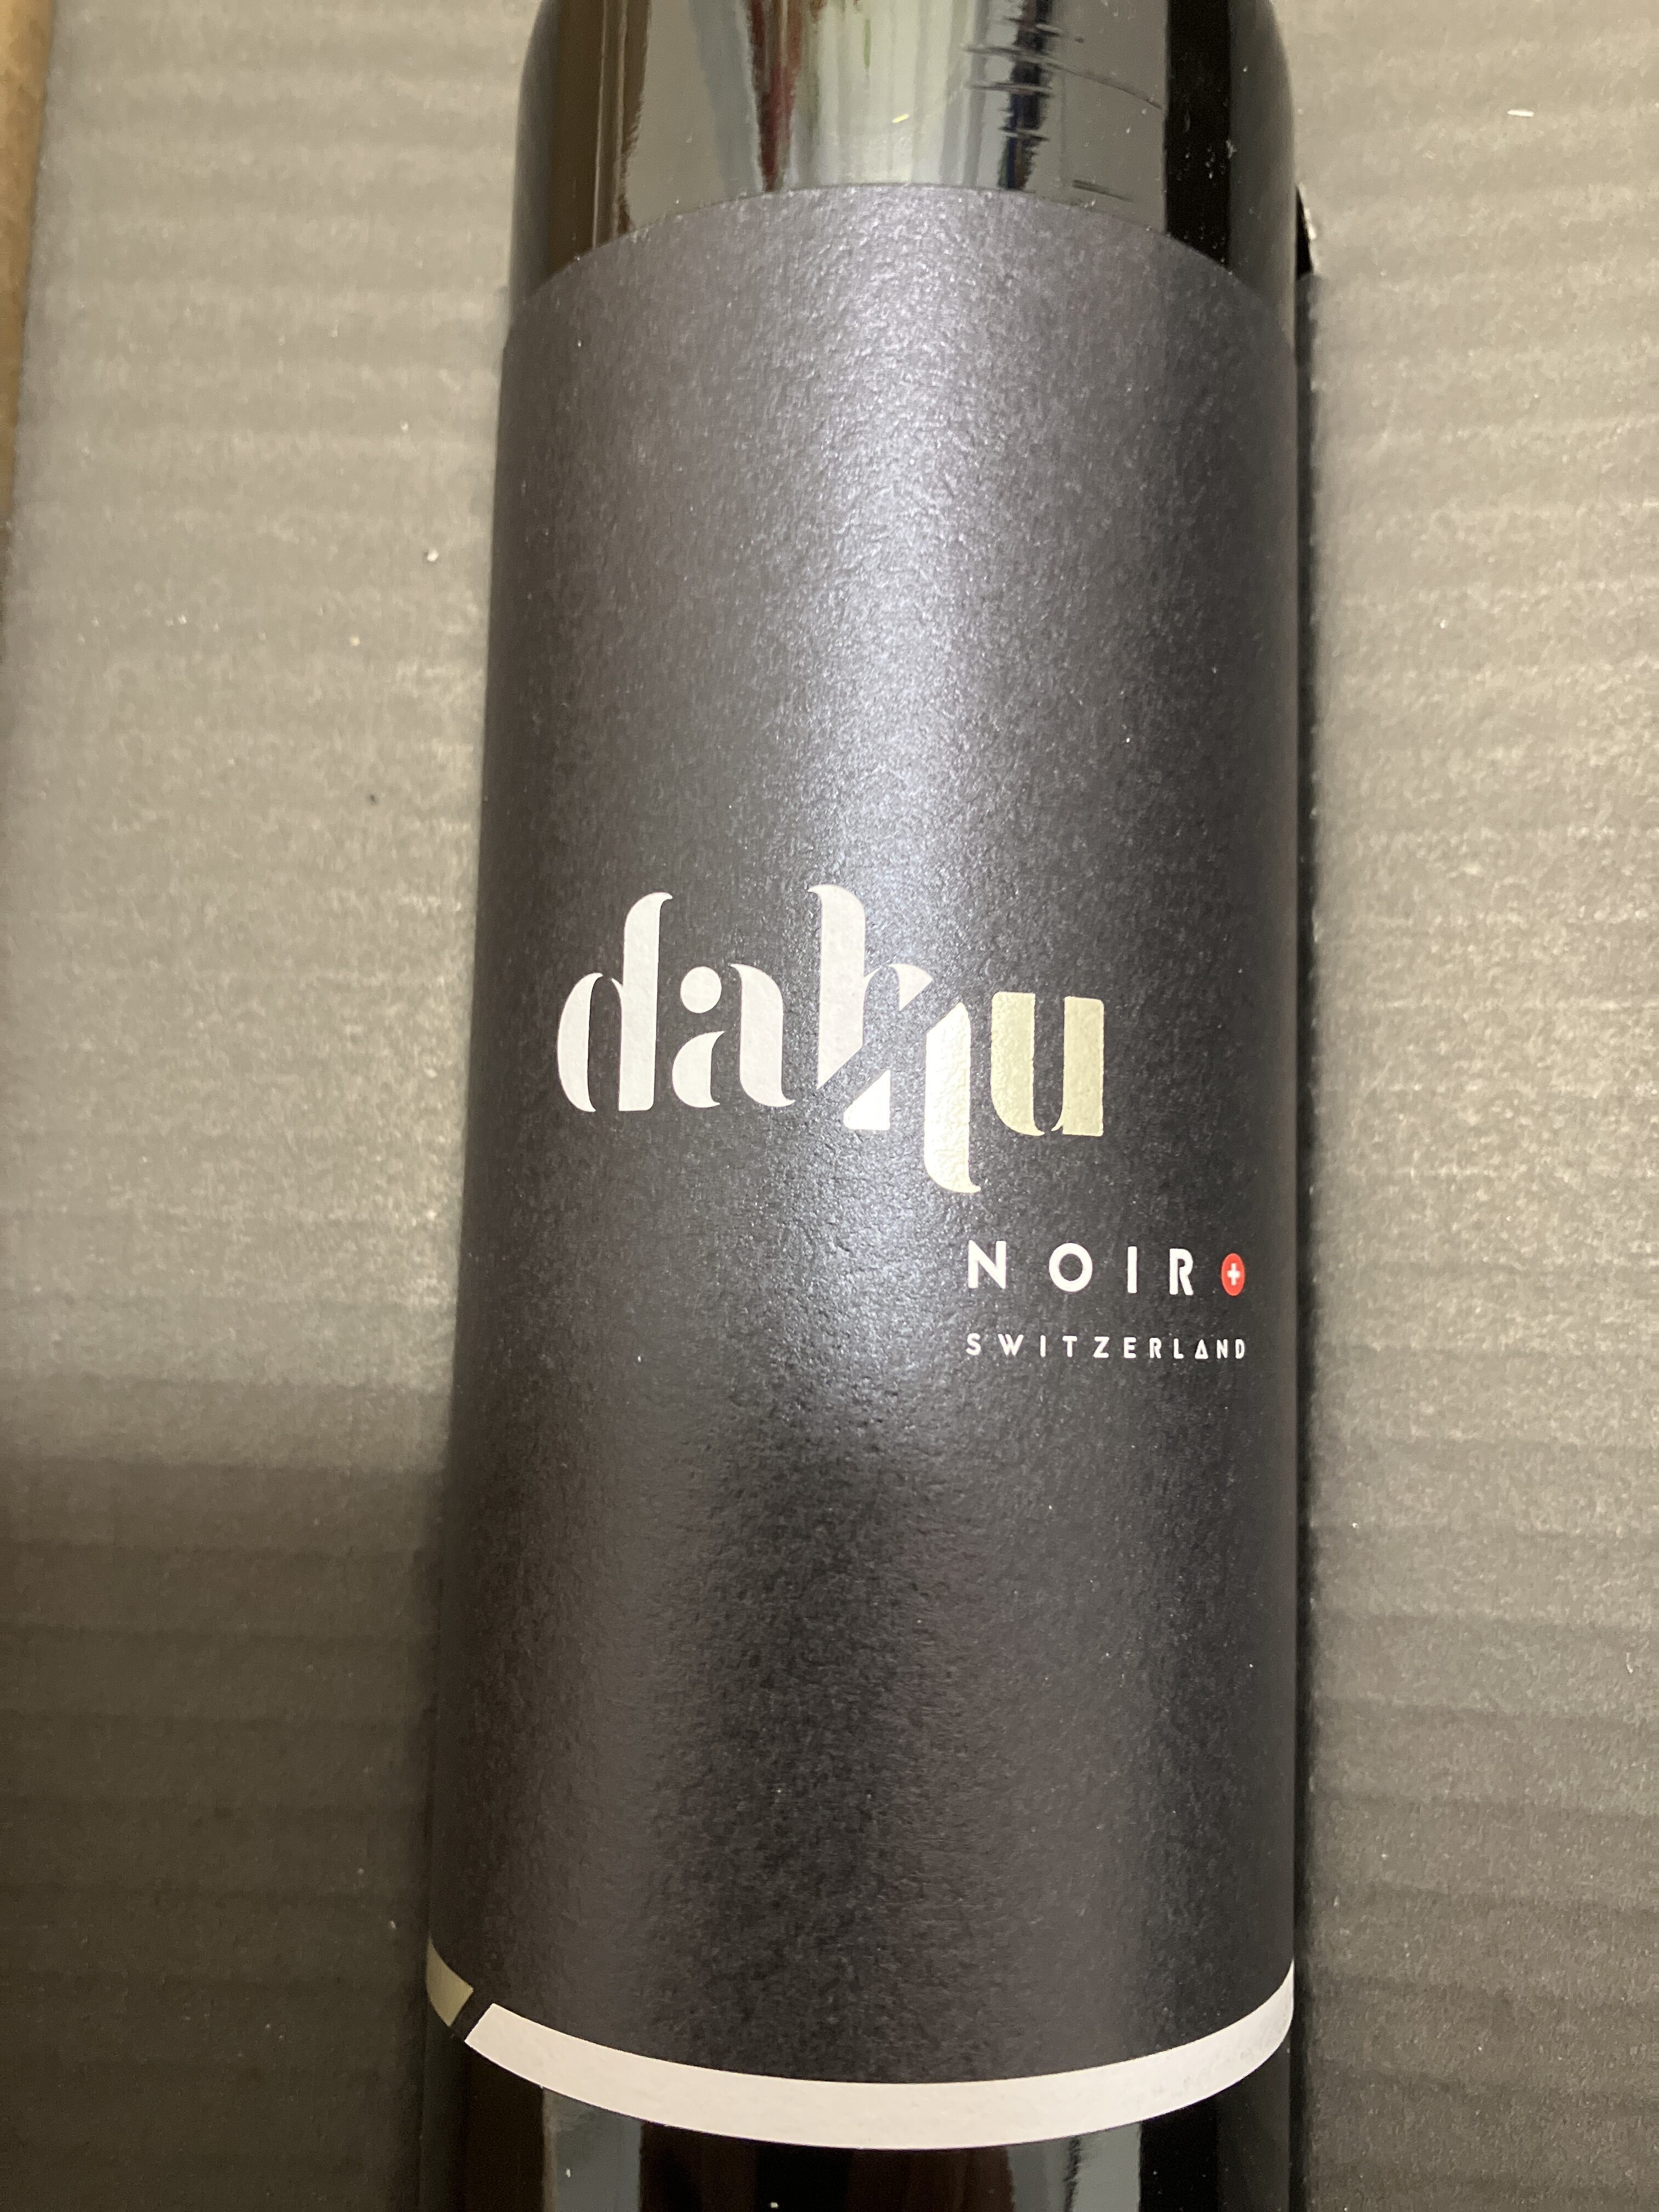 Dahu noir - Produkt - fr